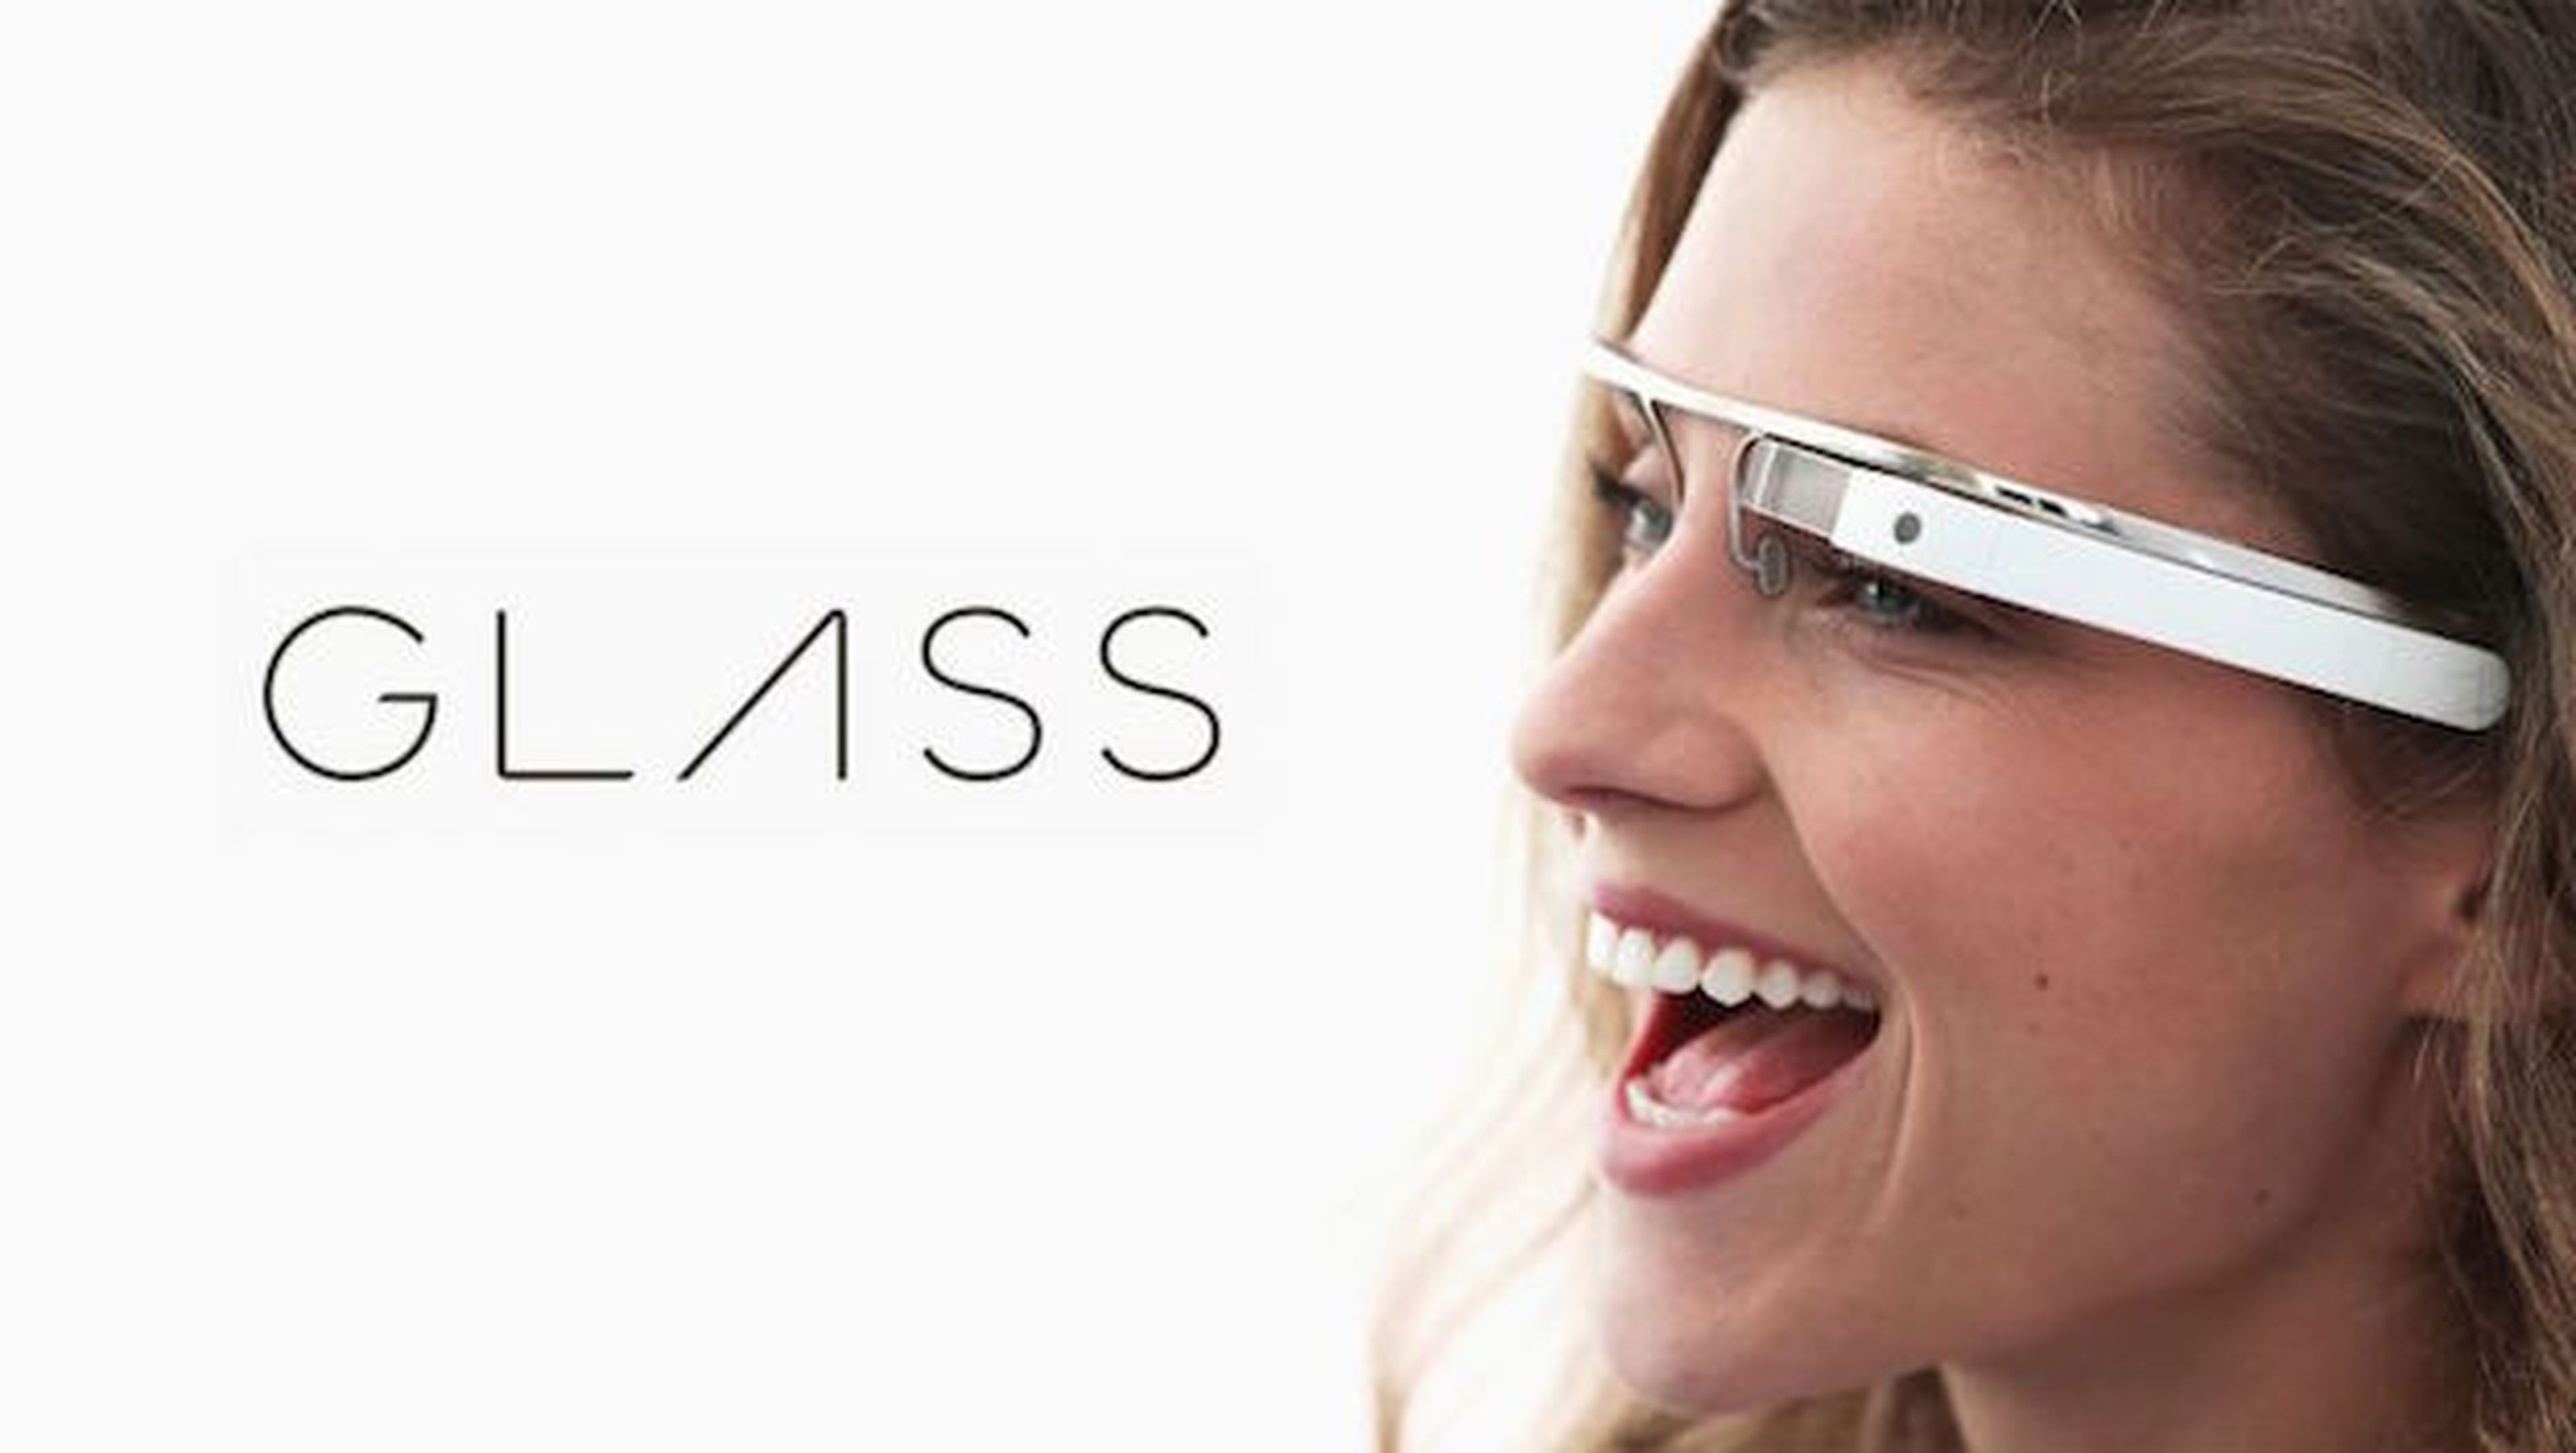 Sea como sea, habrá unas Google Glass